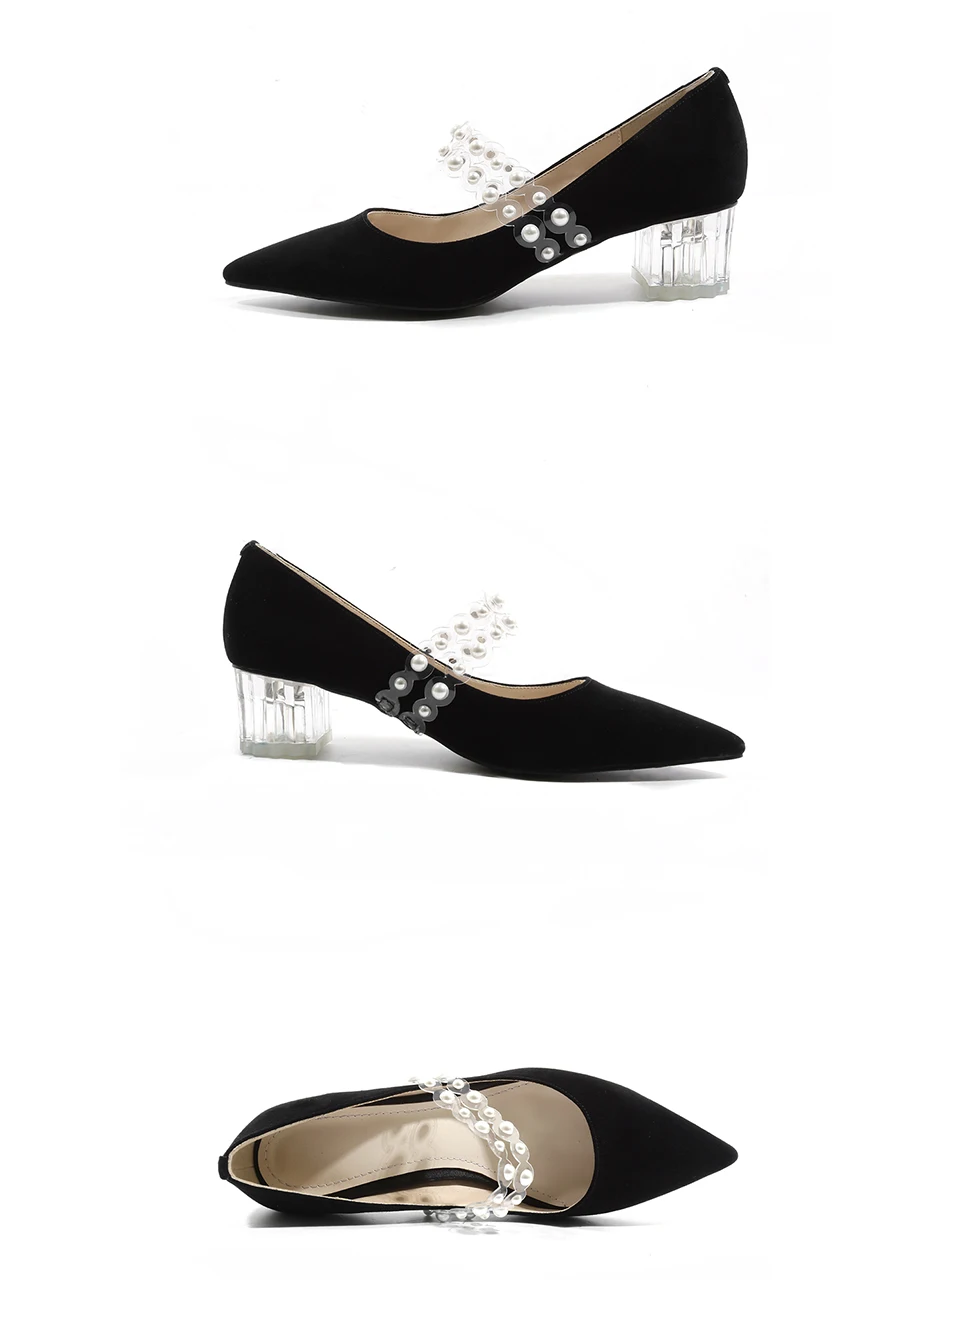 Curvaness/обувь на высоком каблуке Женская обувь mary jane туфли-лодочки на Высоком толстом каблуке Осенняя обувь с черным и белым жемчугом, большие размеры 34-42